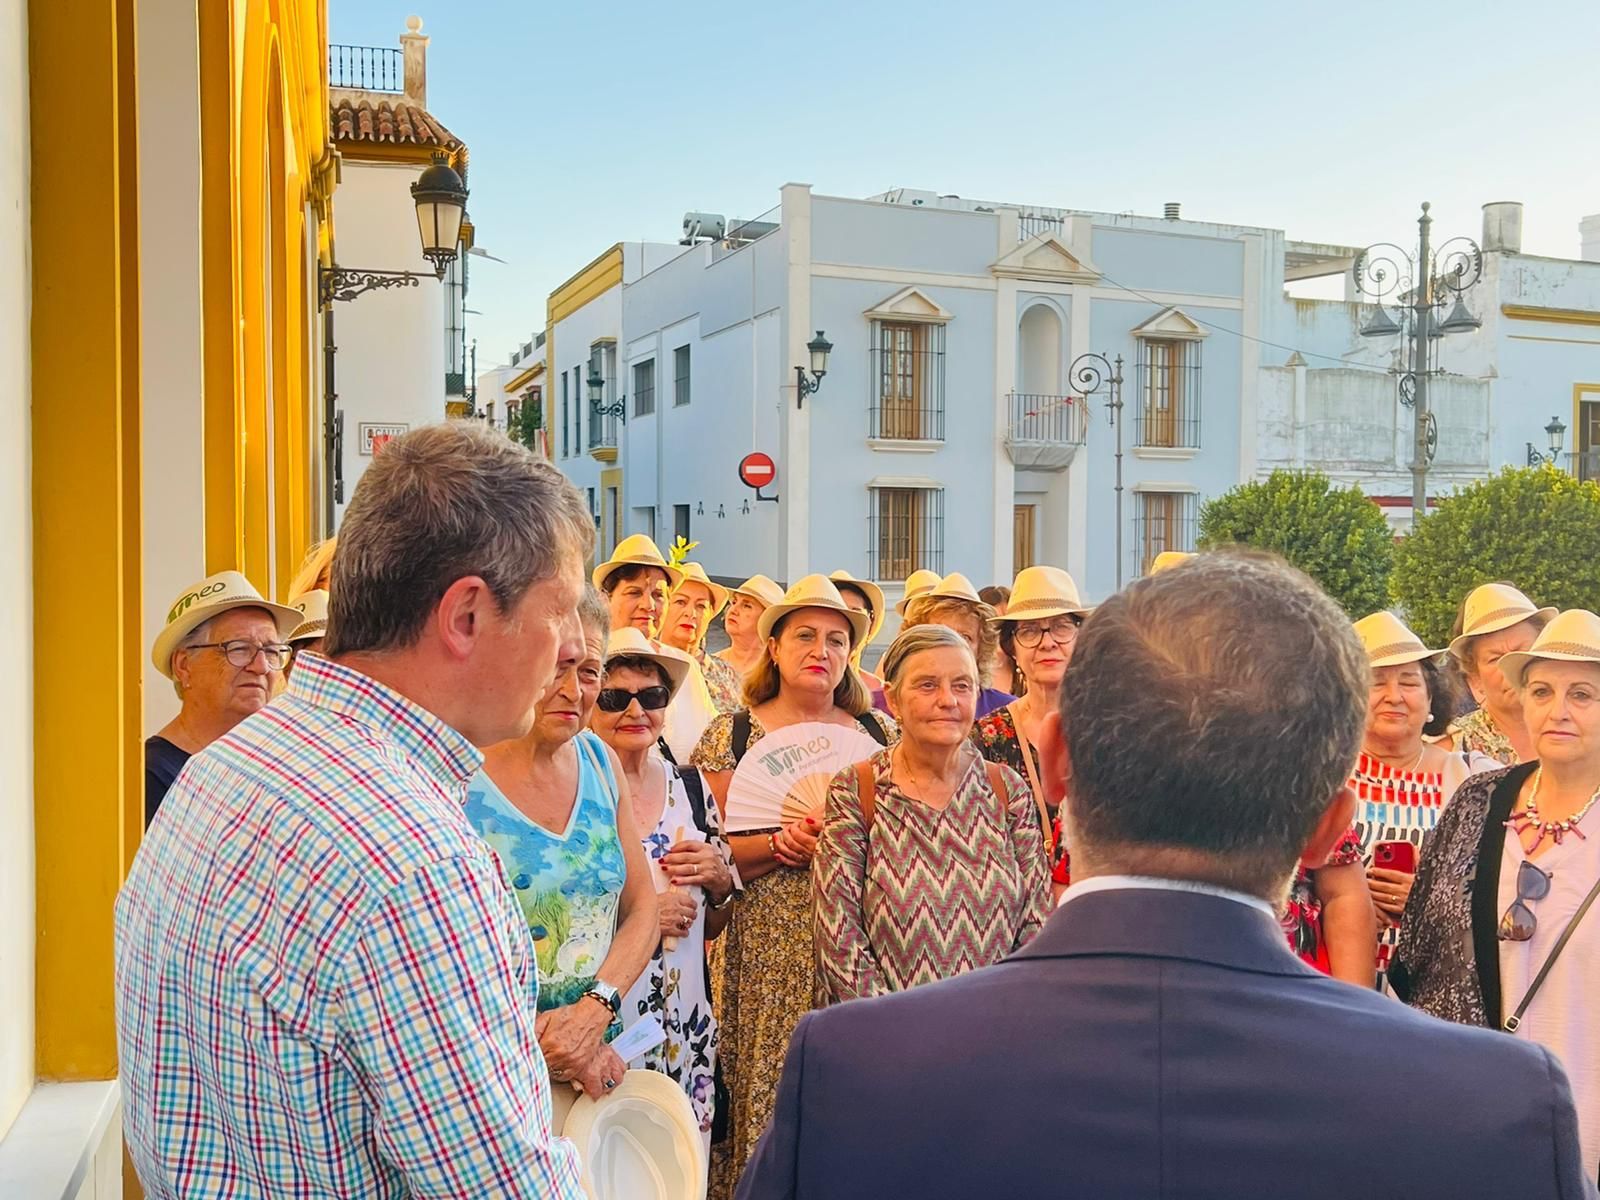 Así fue la visita de los vecinos de Tineo a la localidad hermana de Las Cabezas de San Juan (Sevilla)